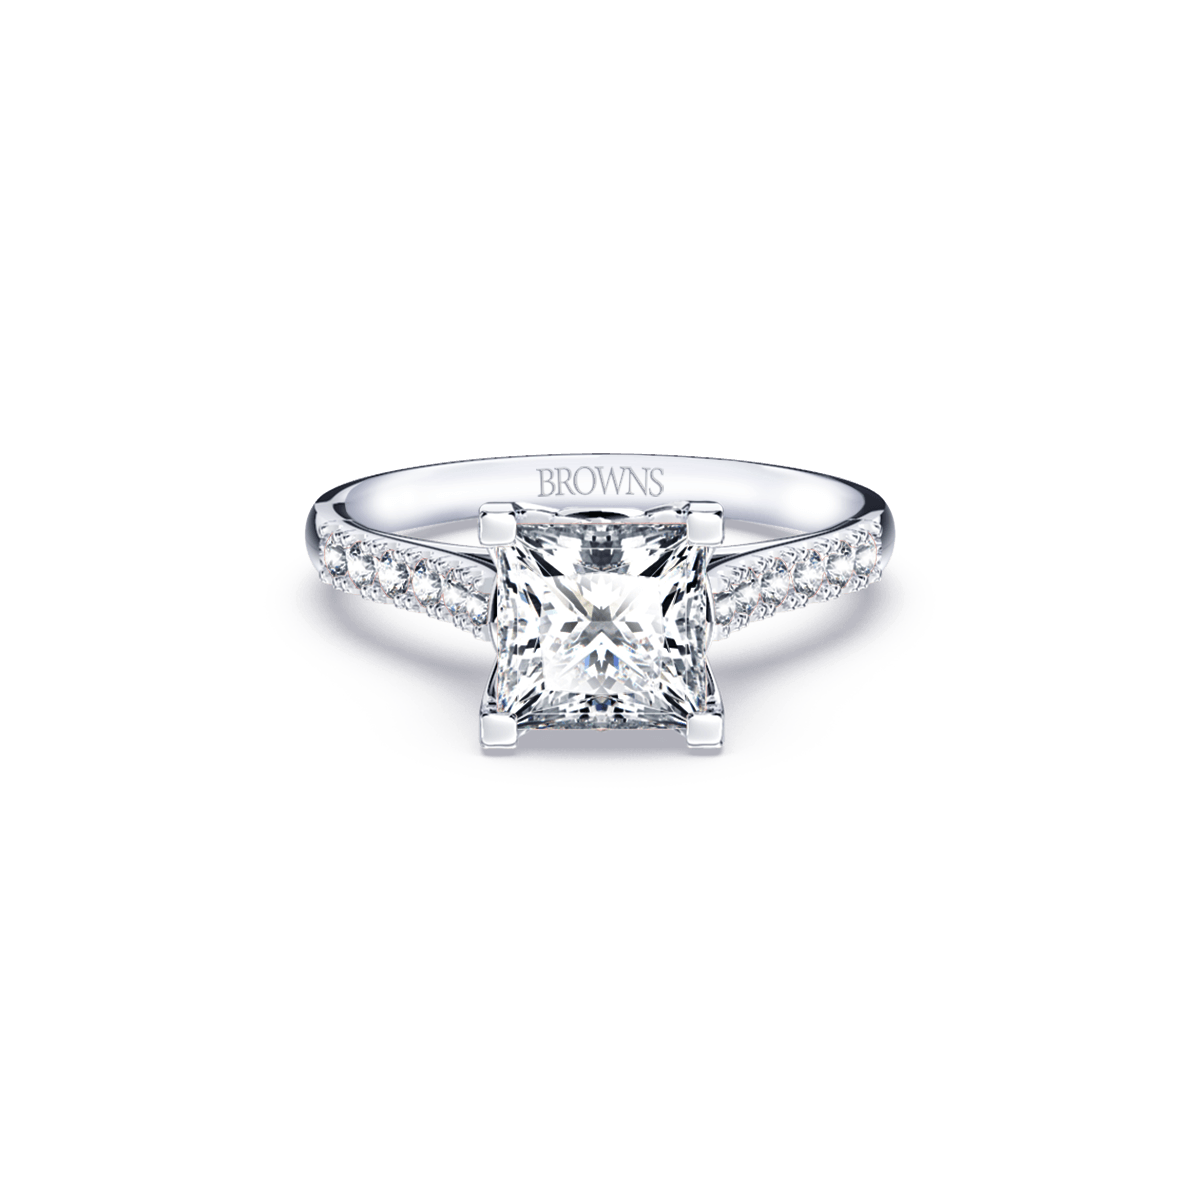 The Princess Diamond Ring